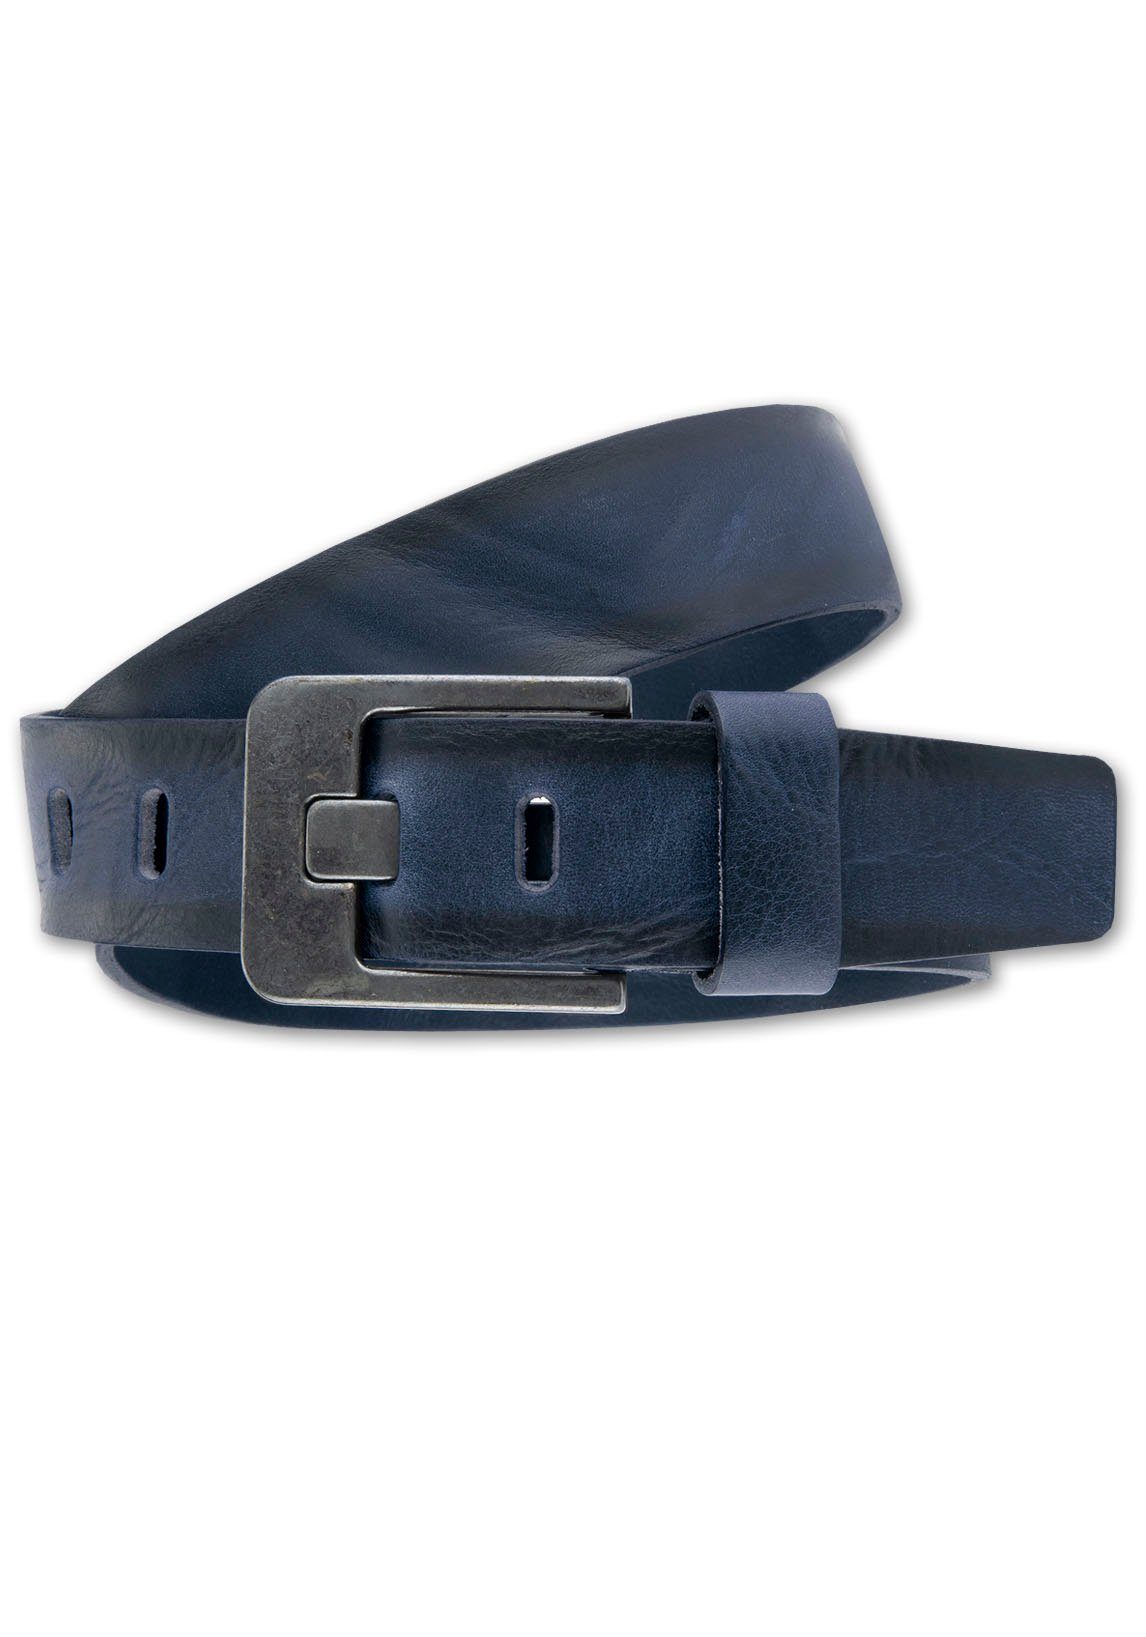 BERND GÖTZ Ledergürtel Ledergürtel mit markanter dunkler Designschließe dunkelblau